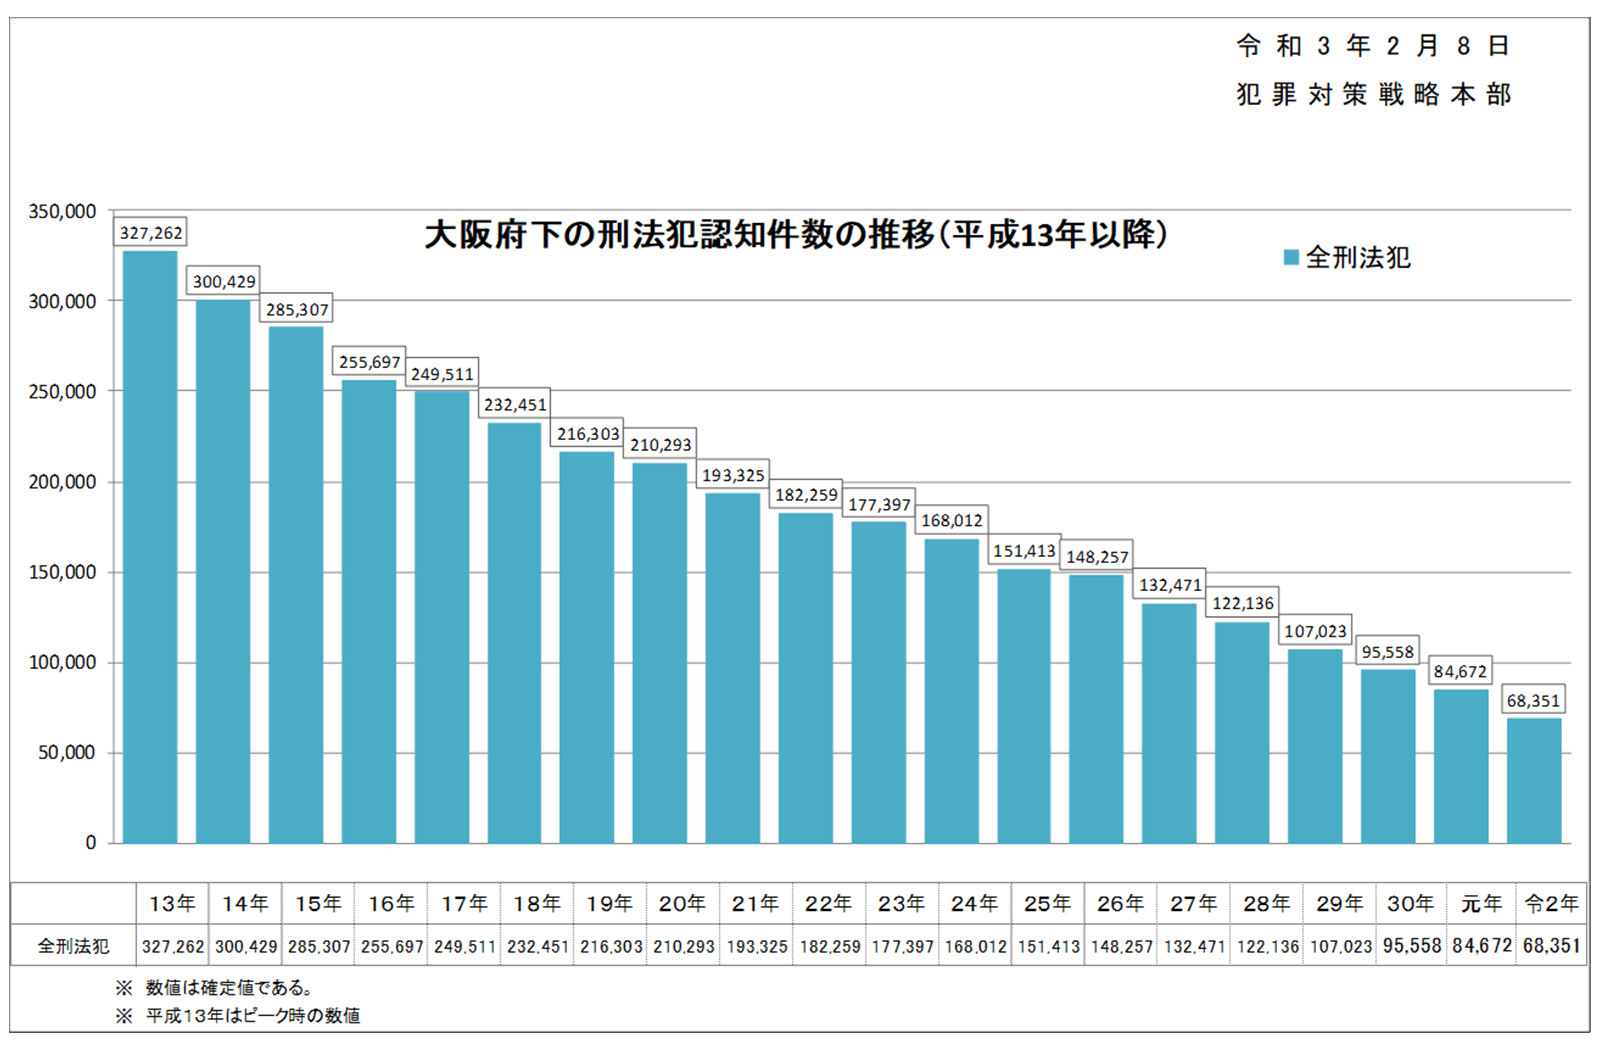 大阪府下の刑法犯認知件数の推移を表すグラフの画像